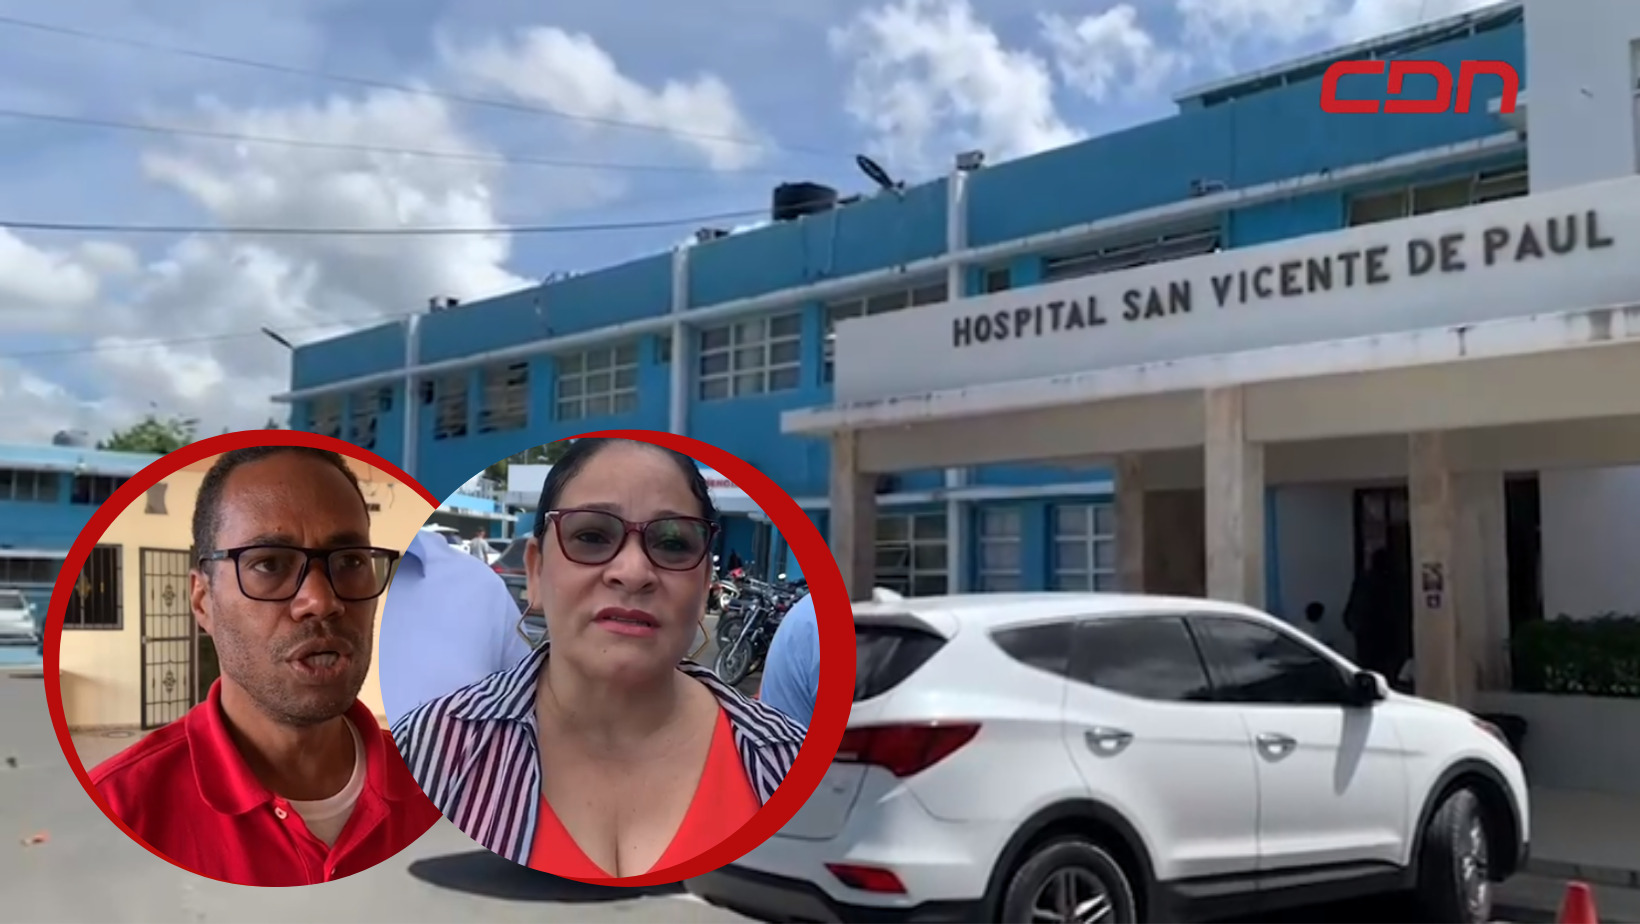 Denuncian deterioro y mal servicio en hospital San Vicente de Paul de SFM